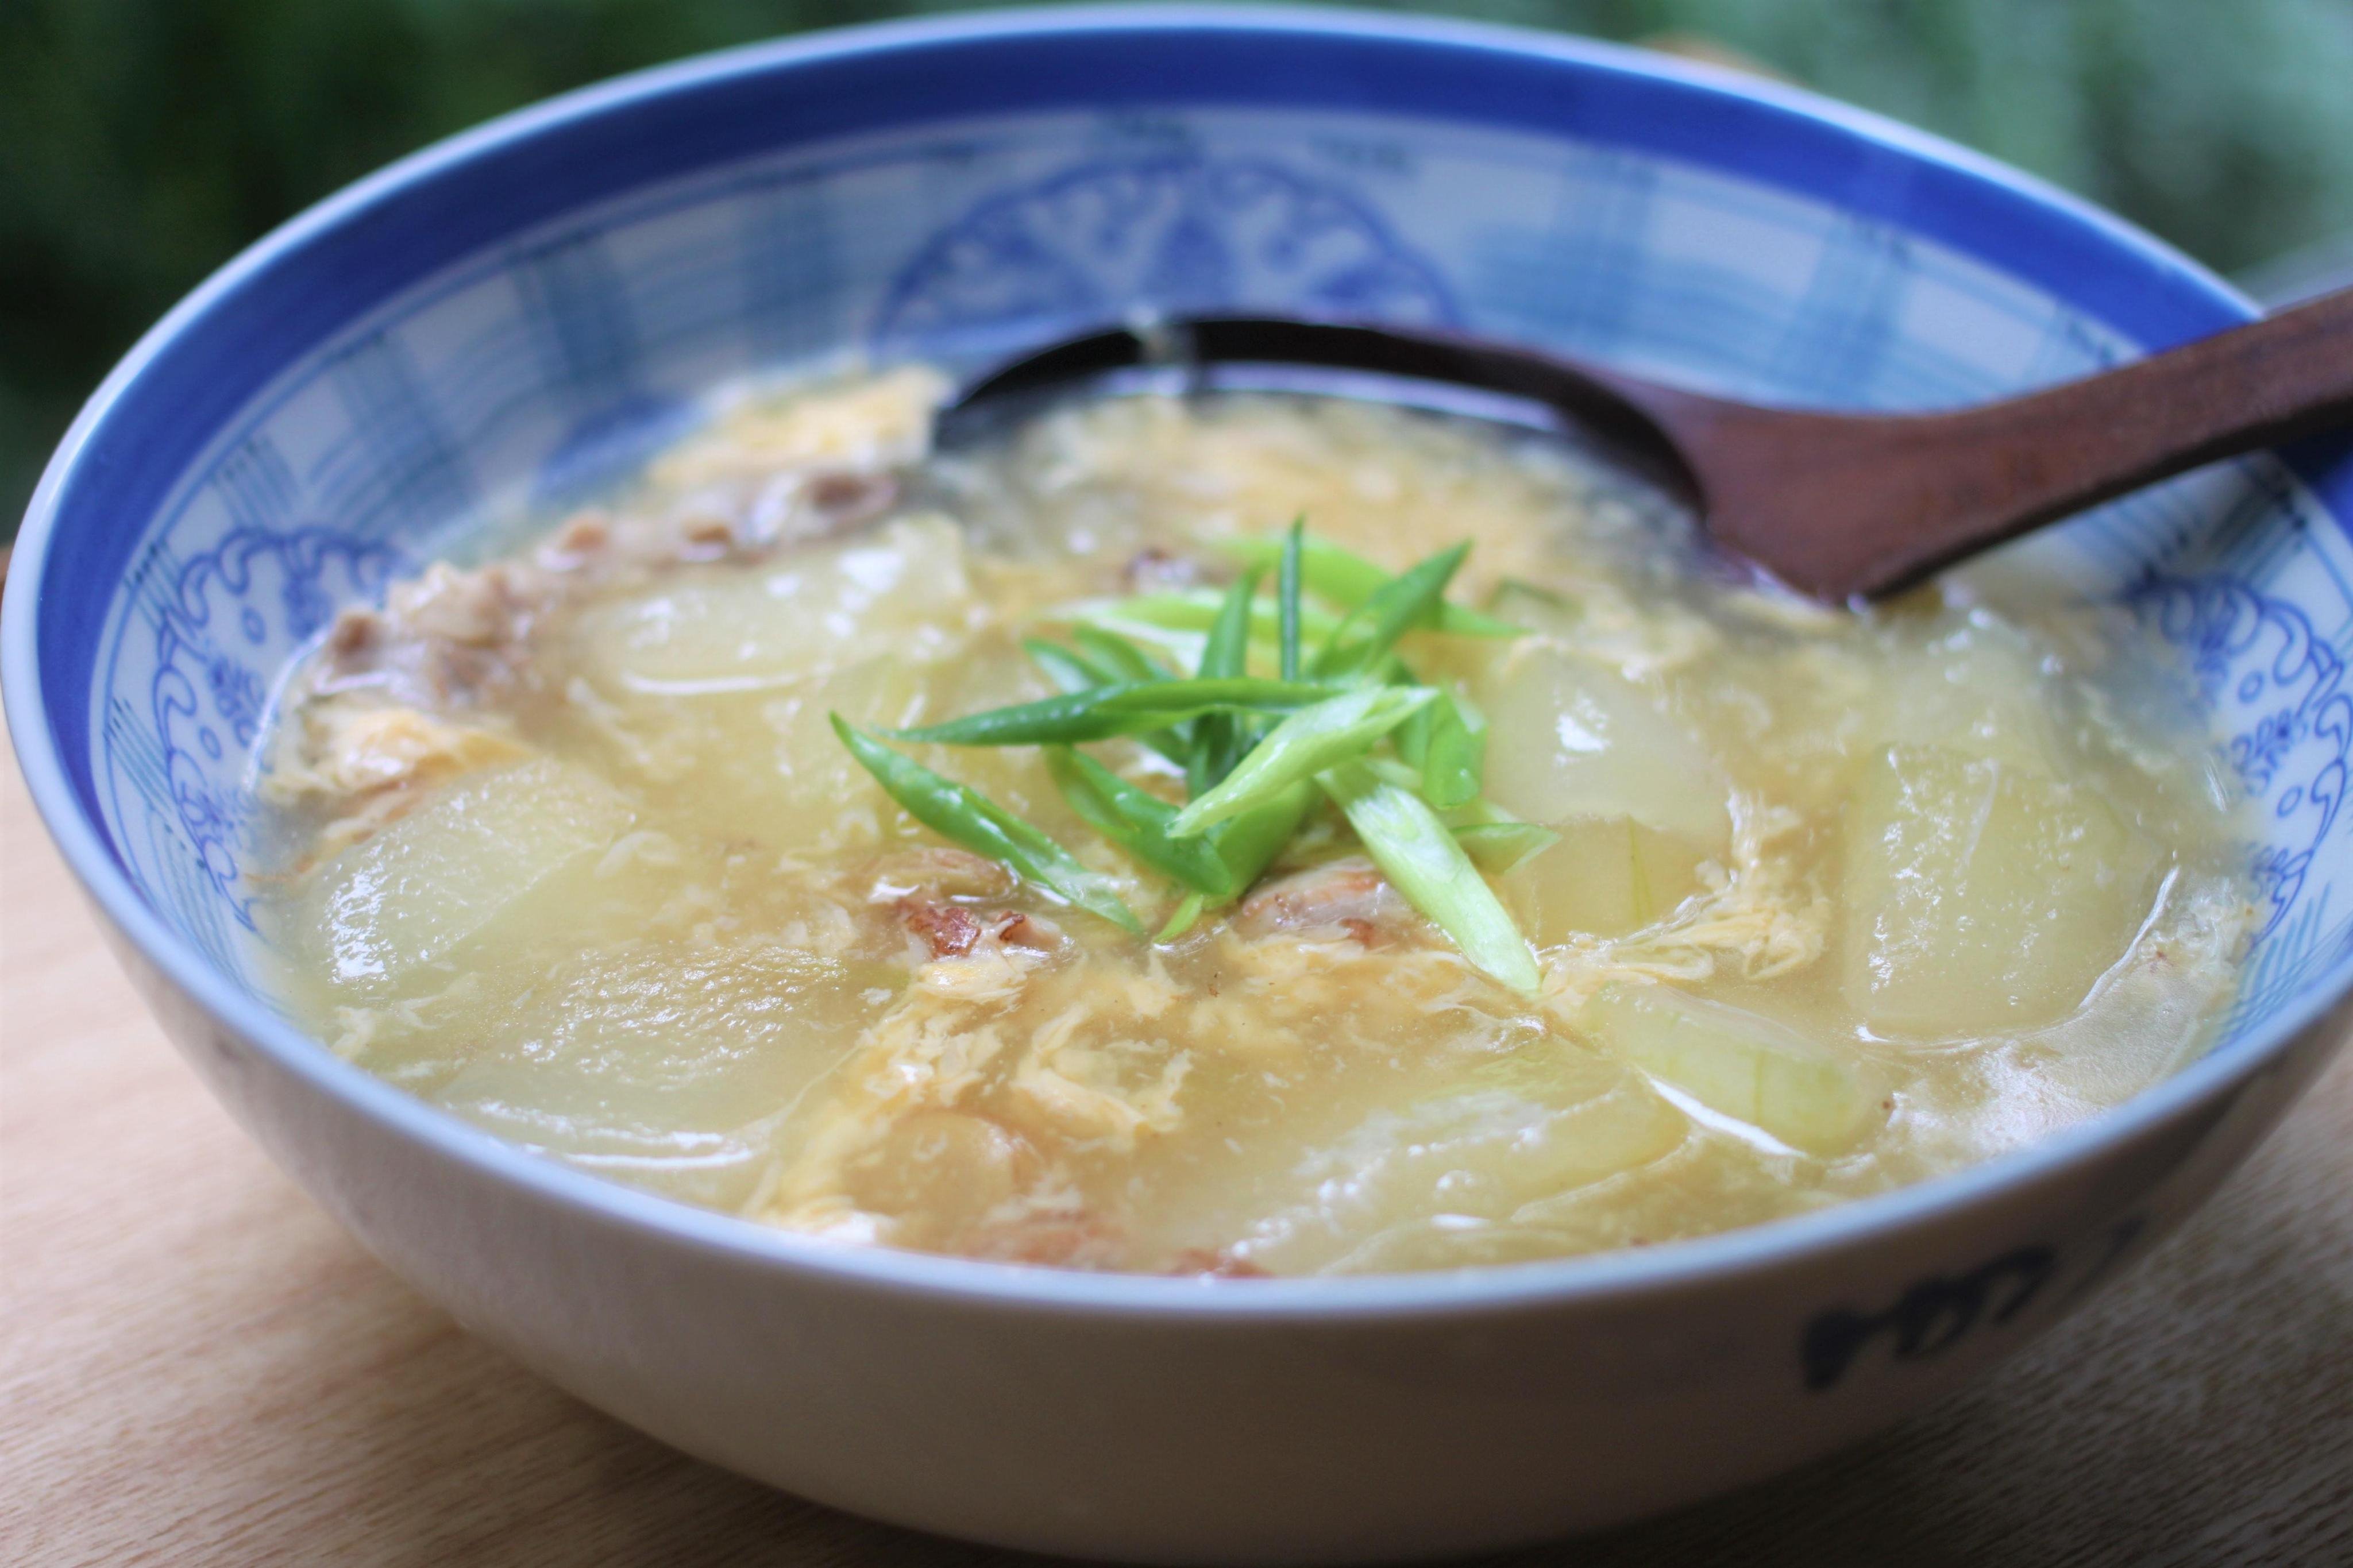 冬瓜と鶏の中華スープのレシピ 作り方 佐藤 絵里子 料理教室検索サイト クスパ